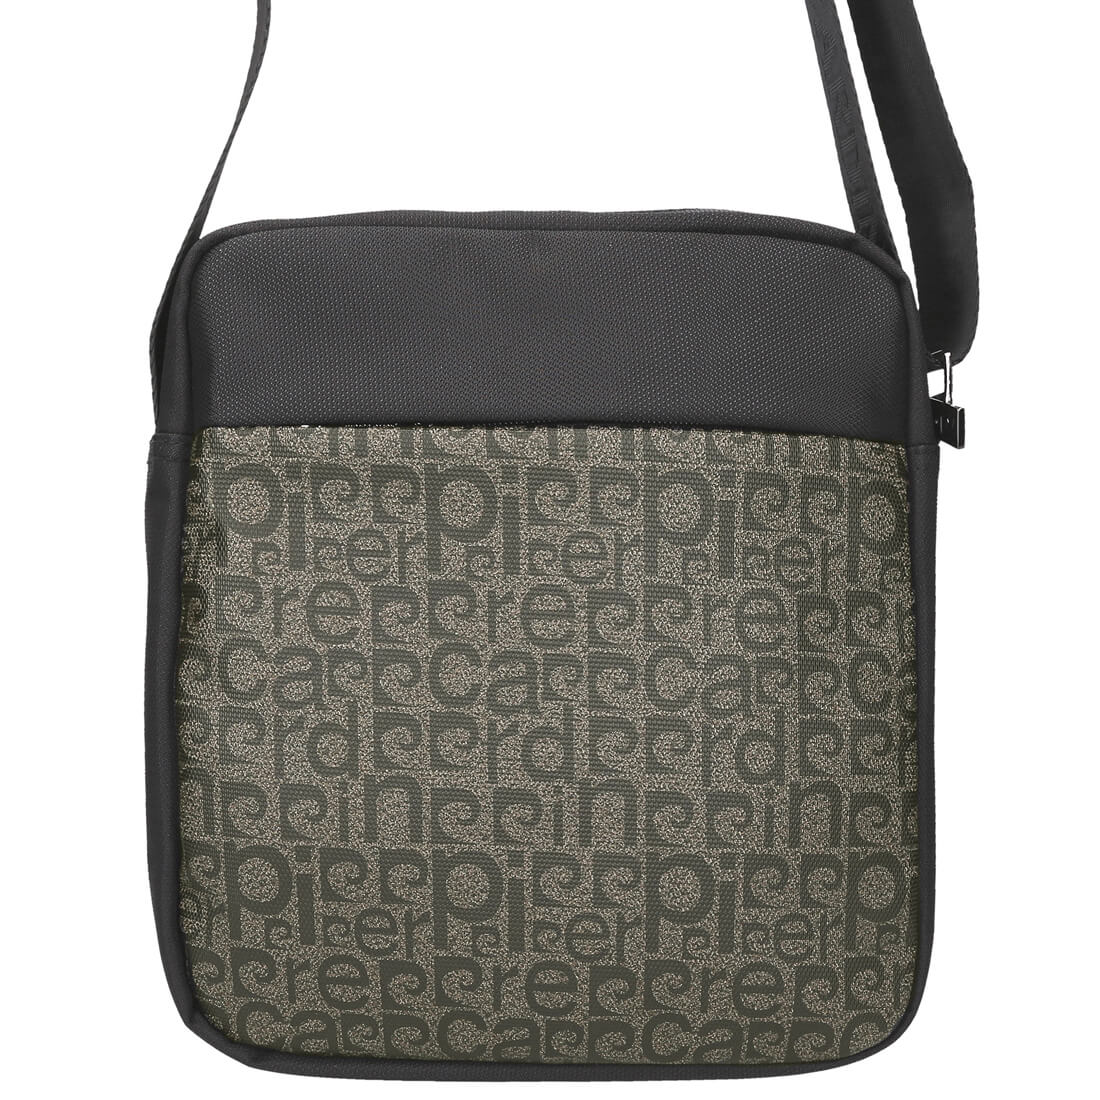 Pierre Cardin | Ανδρική τσάντα GBU522, Μαύρο/Μπεζ 7